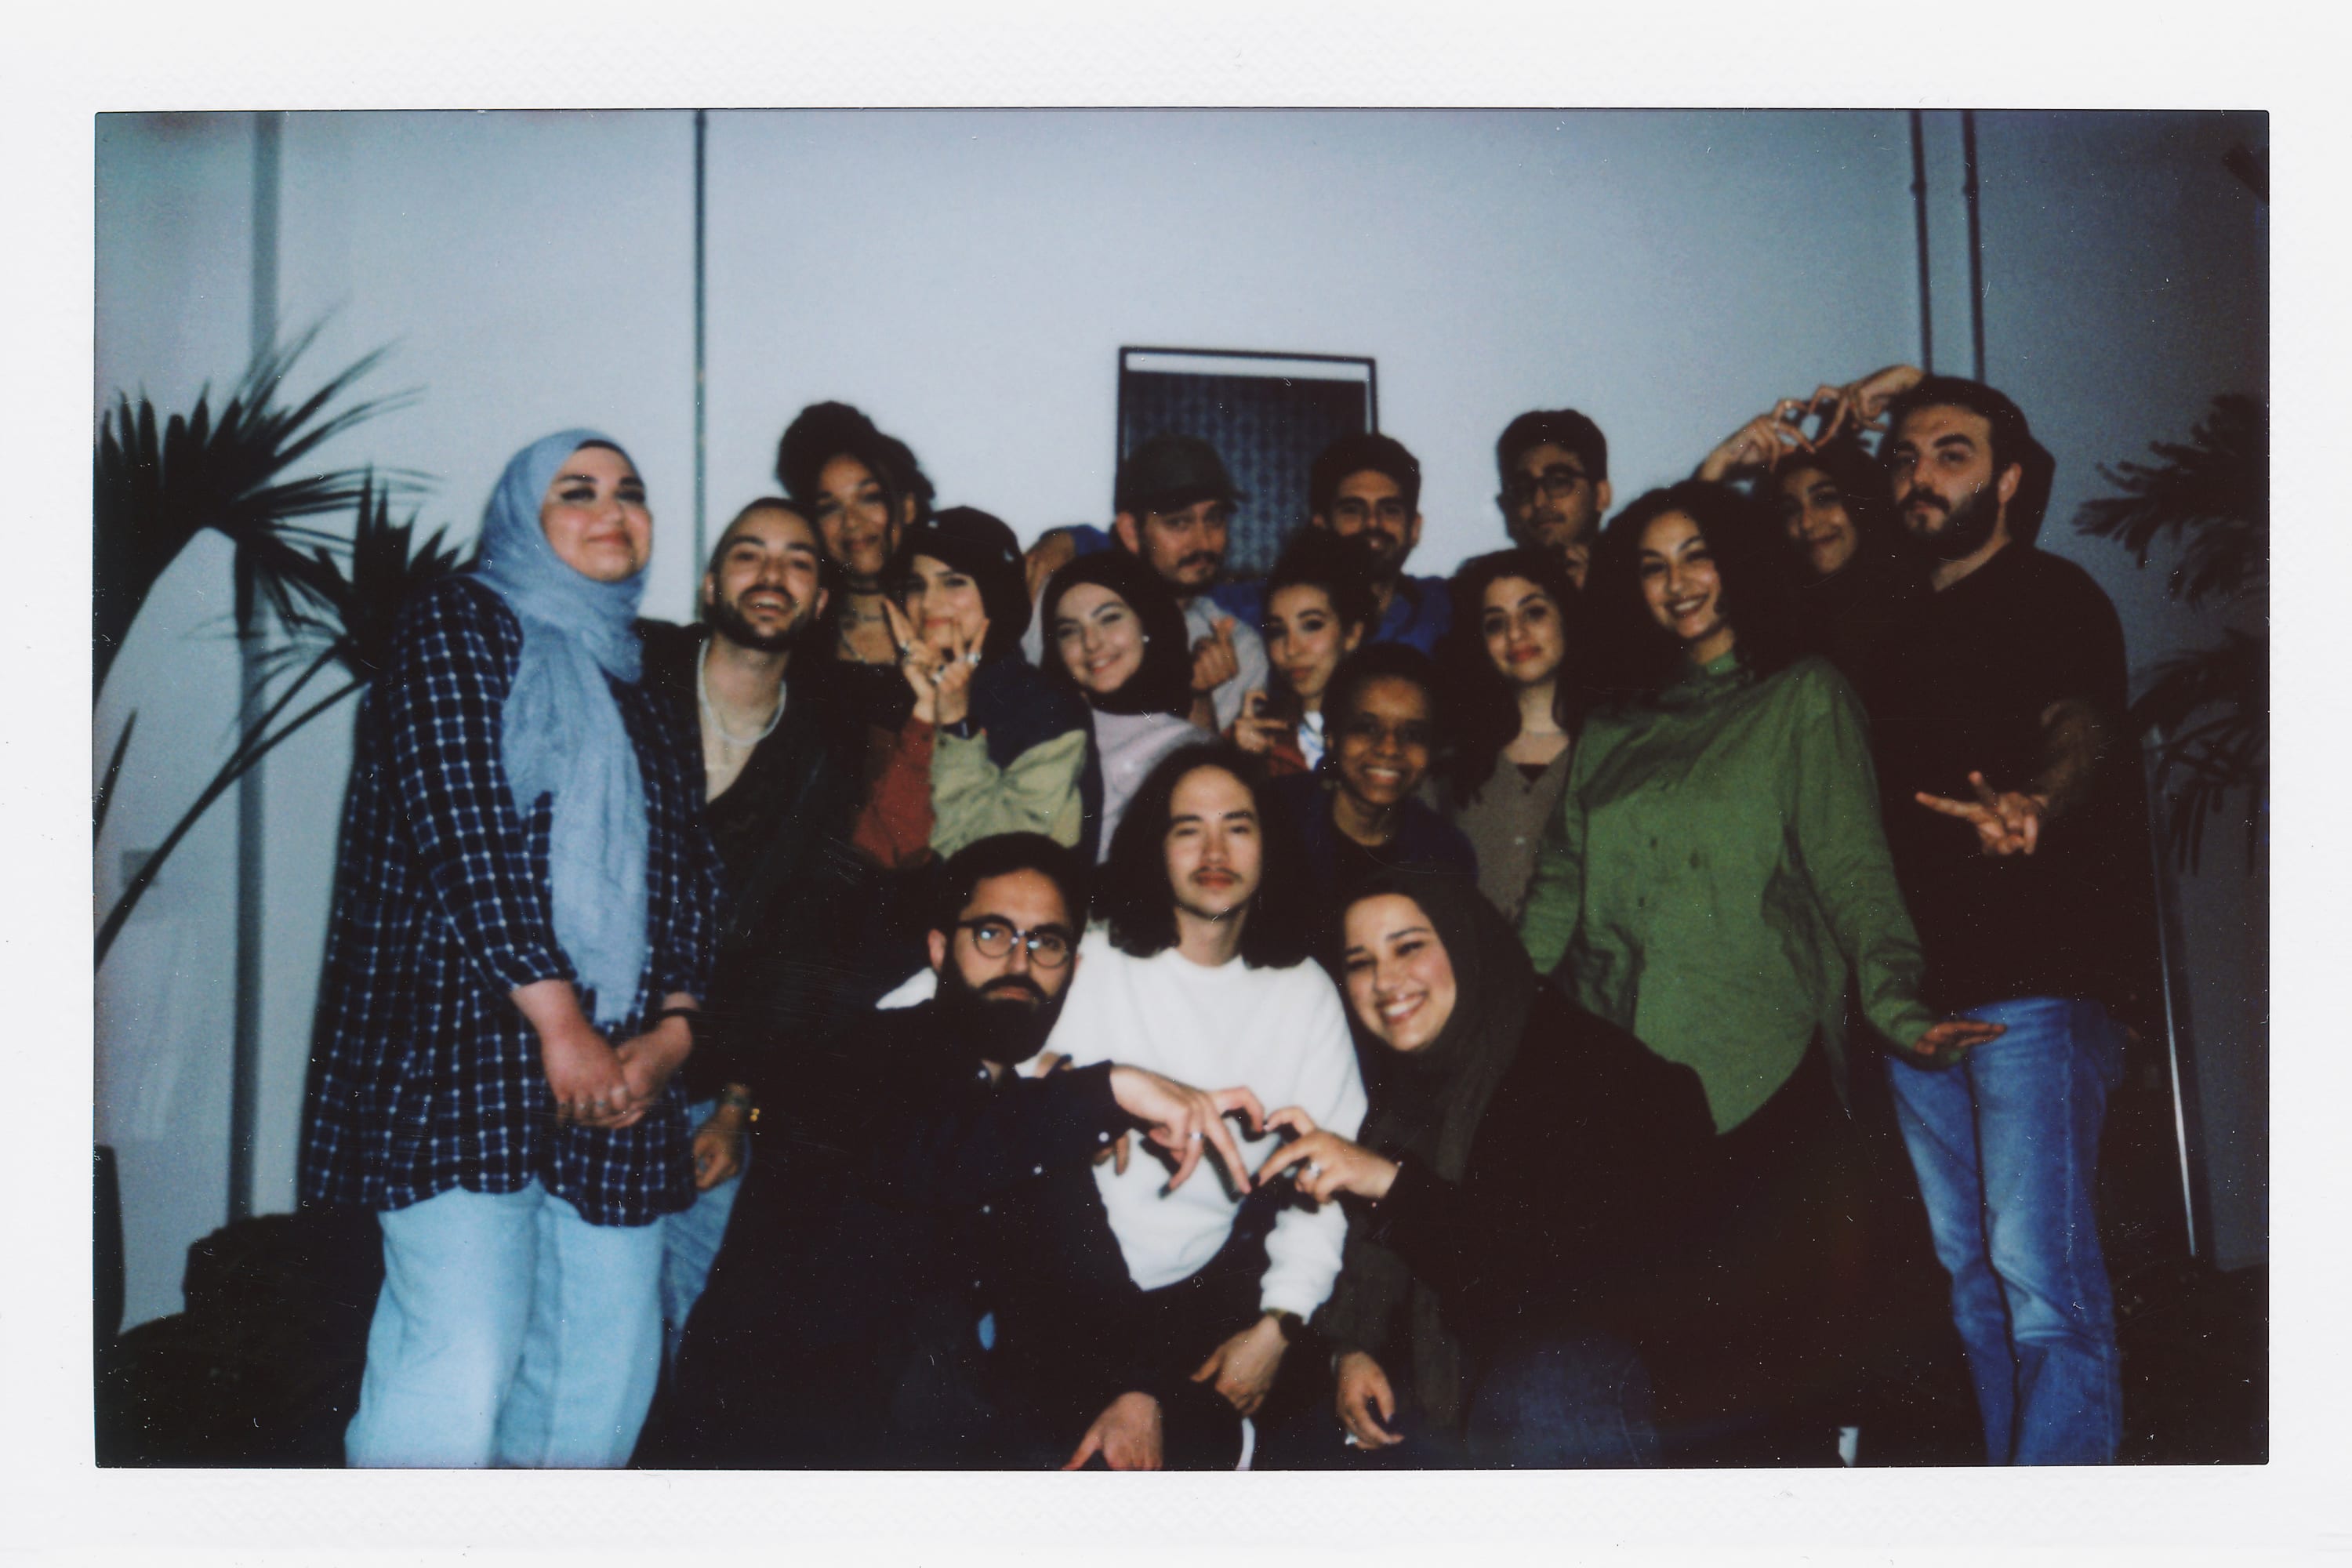 Polaroidbild einer Gruppe von Menschen